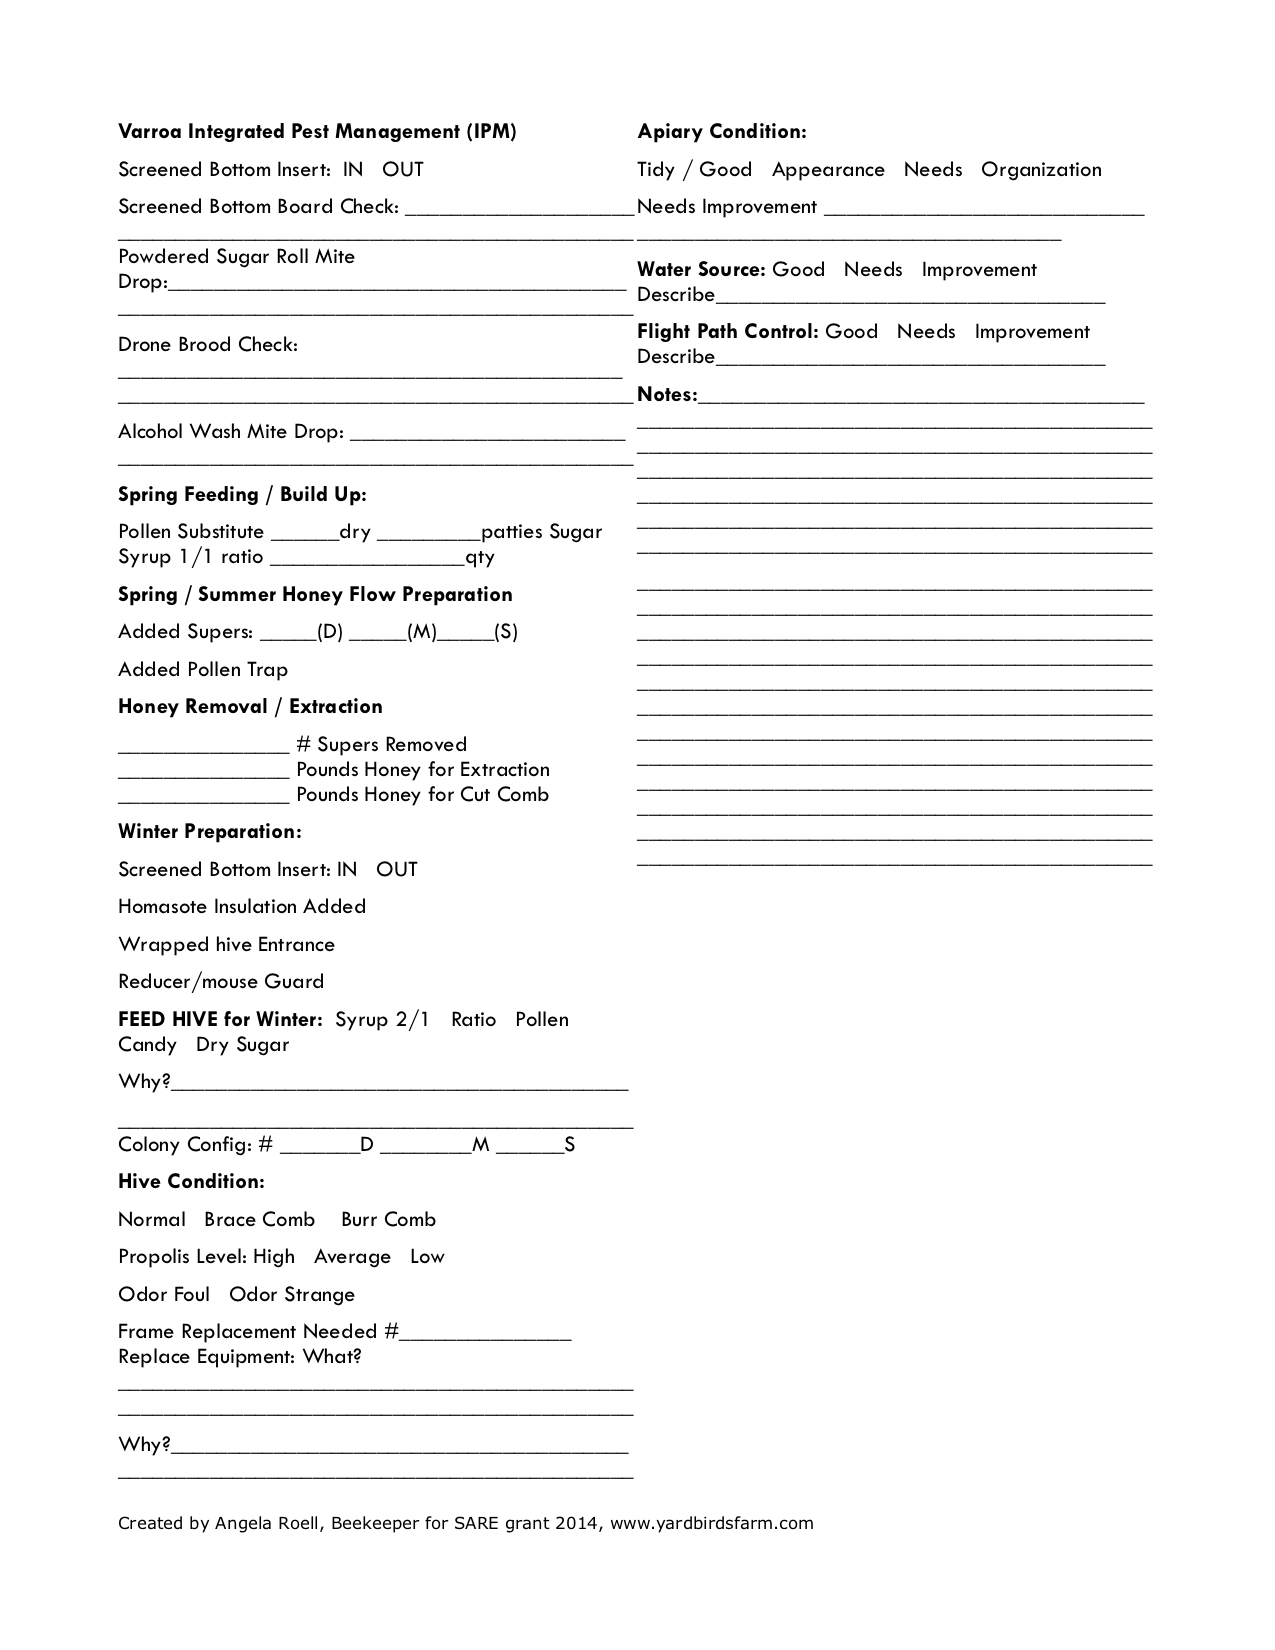 Página 2 del formulario de hoja de inspección de colmena